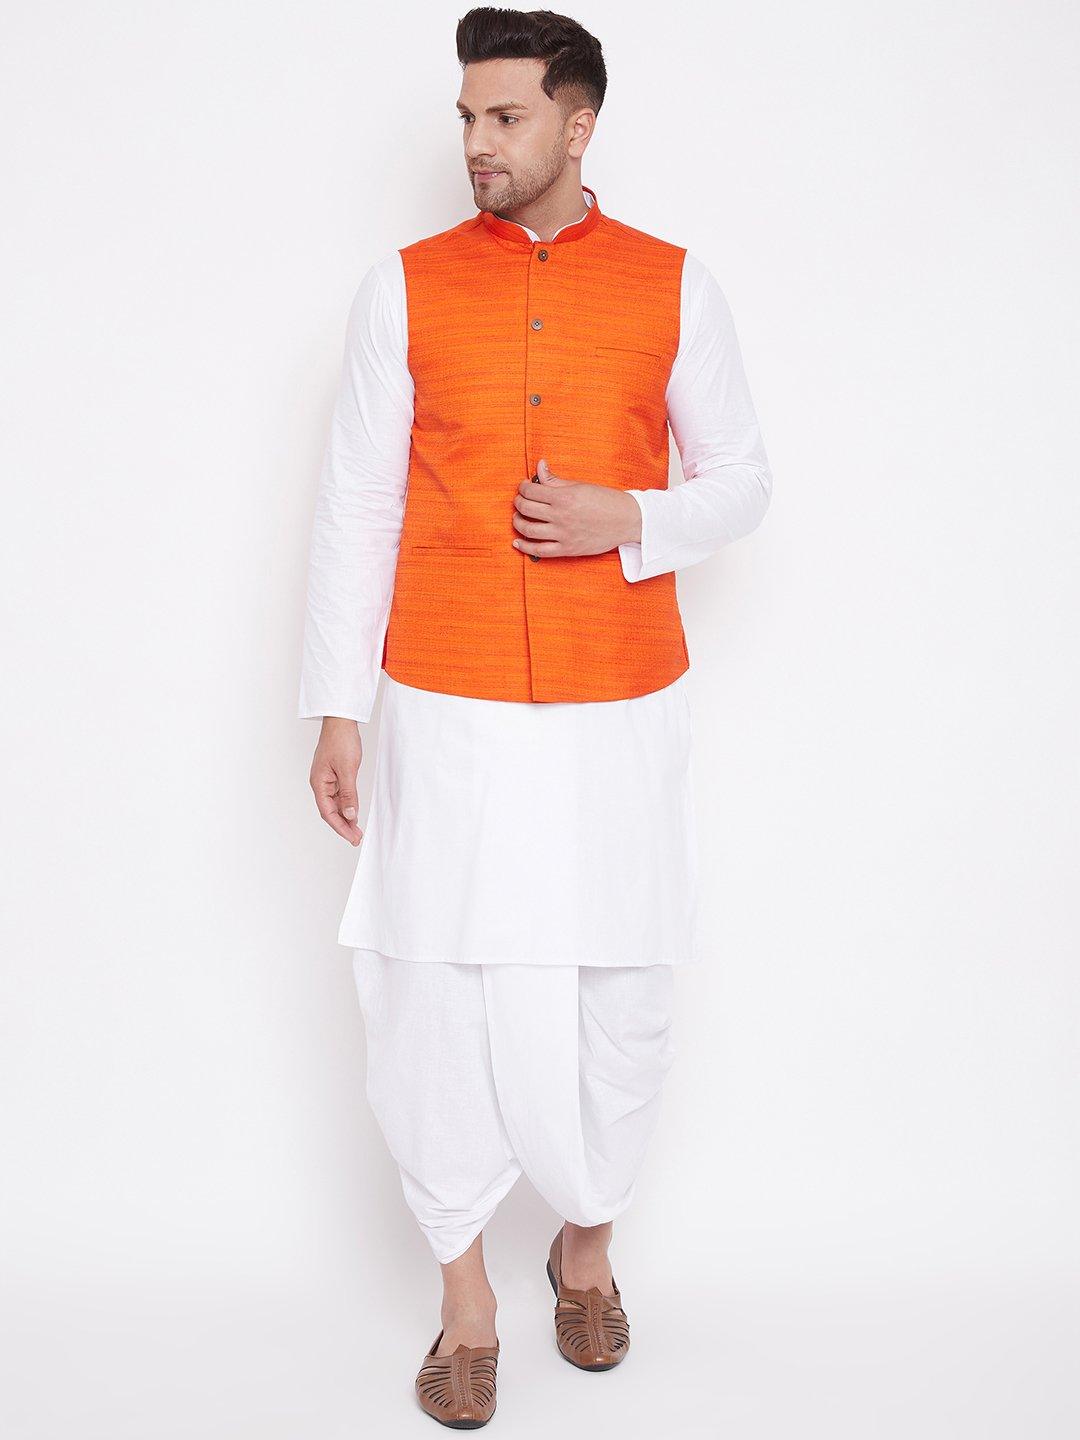 Men's Orange And White Cotton Blend Jacket, Kurta and Dhoti Set - Vastramay - Indiakreations